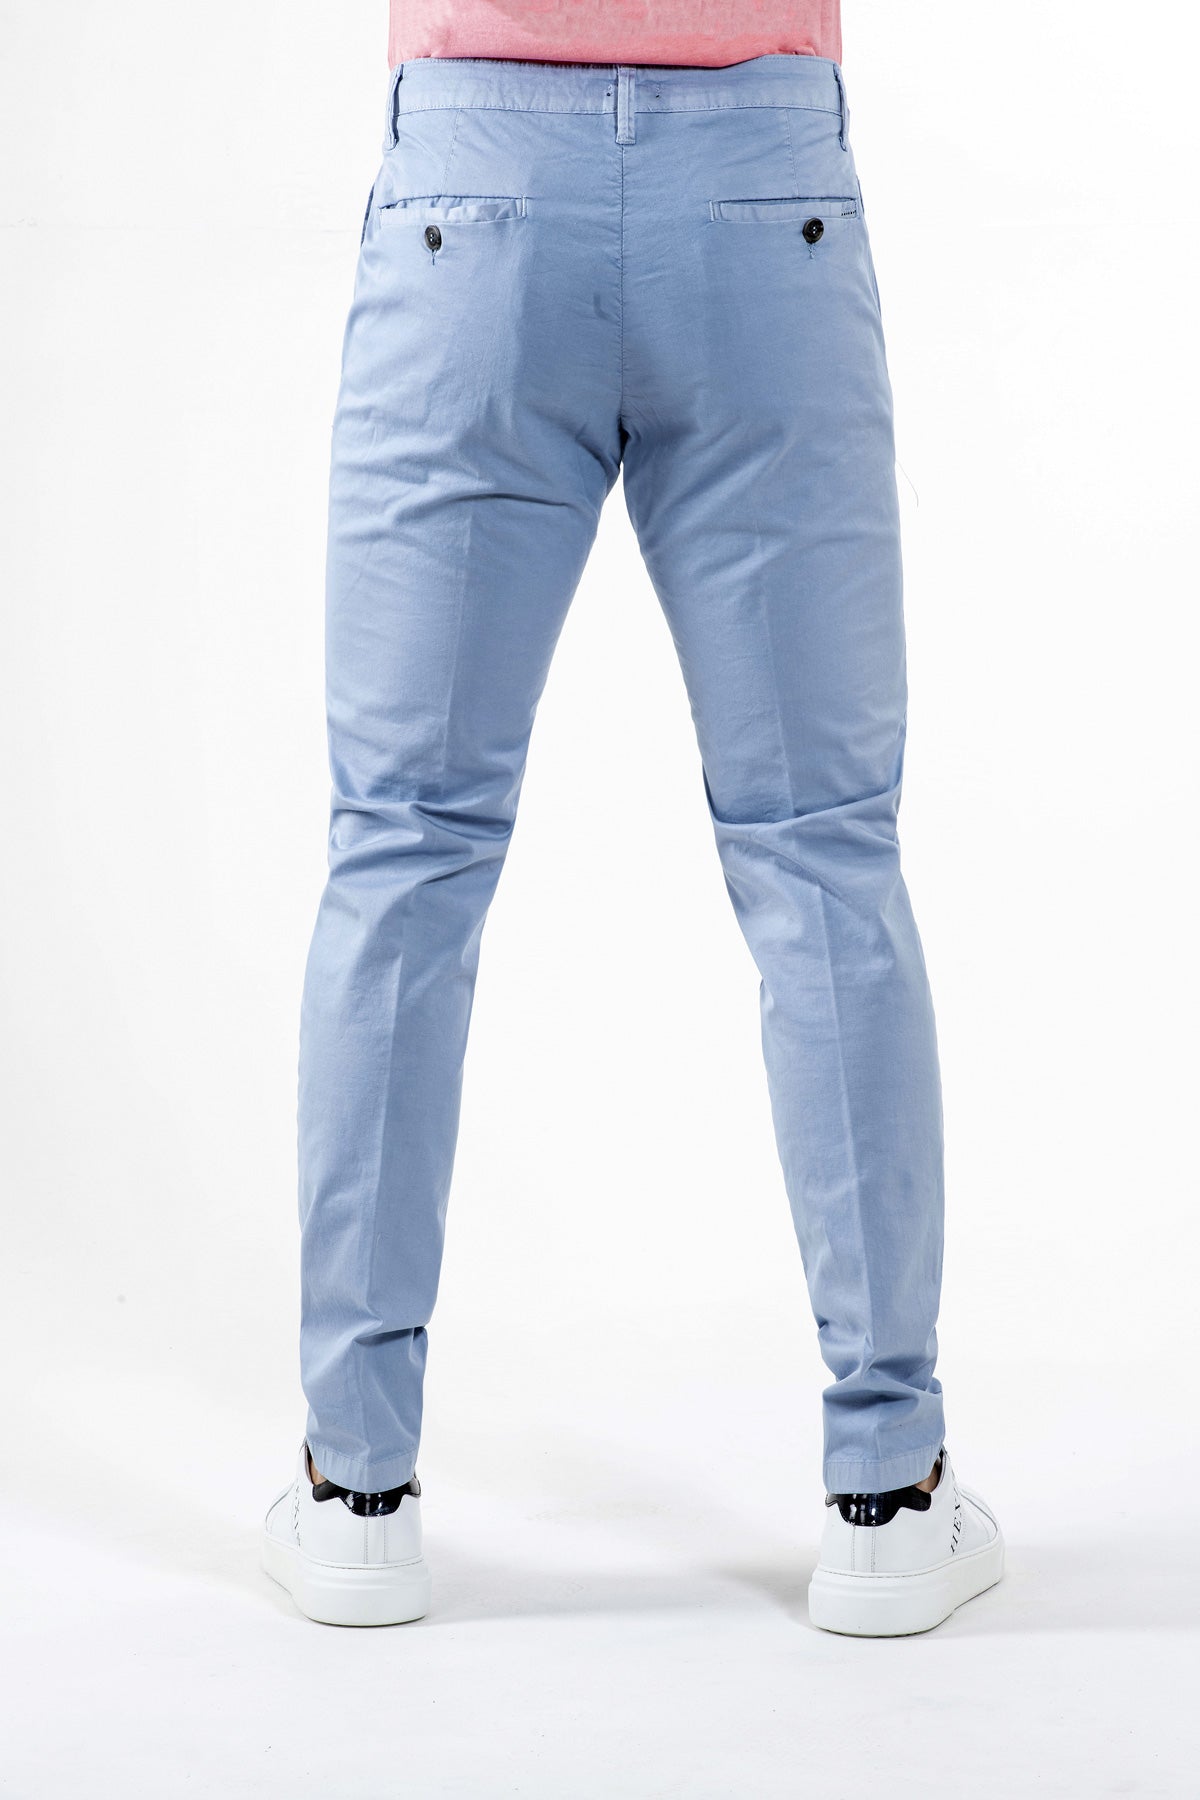 Pantalone Chino Brixton in cotone stretch Azzurro